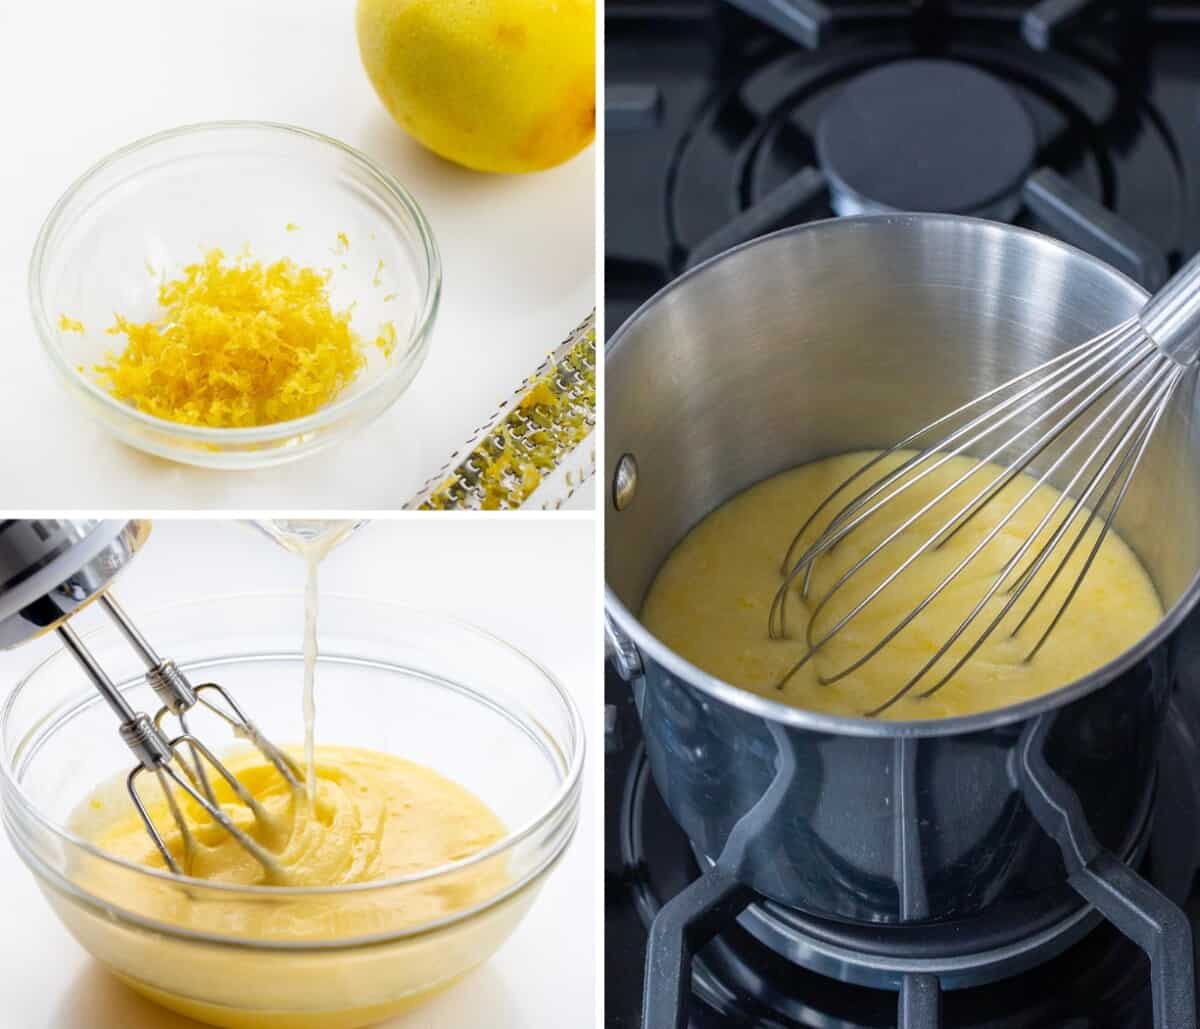 Steps for Grating Lemon, Making the curd Mixture, and then Heating Curd Mixture to Make Lemon Curd!